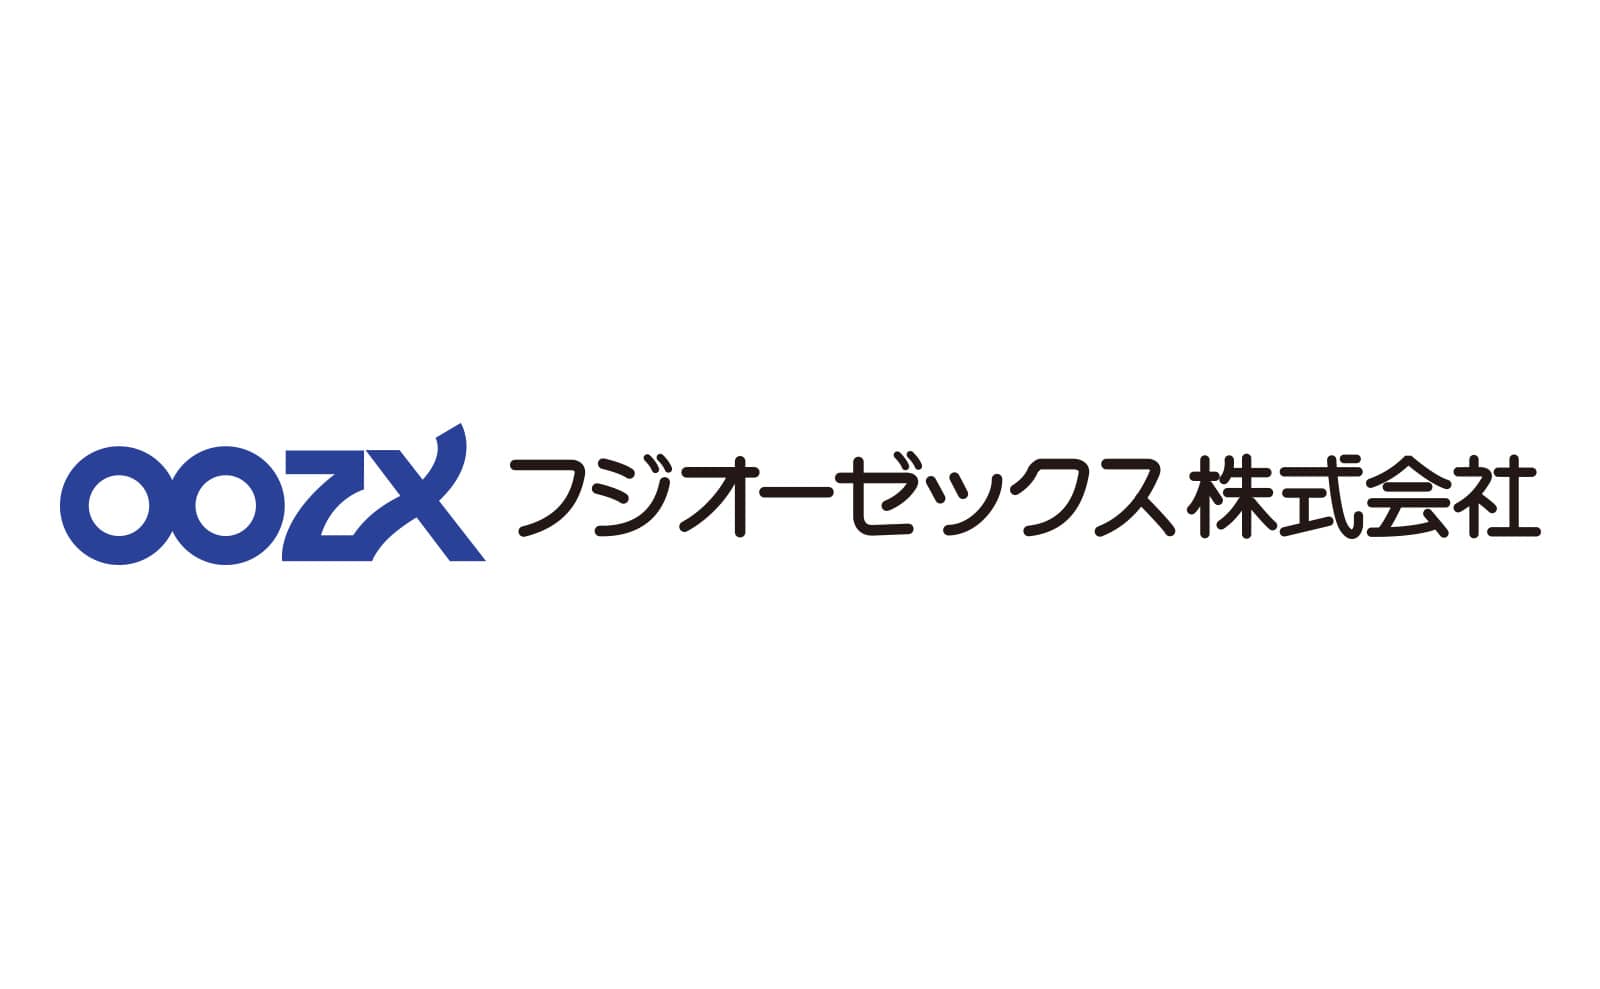 Fuji OOZX Inc.